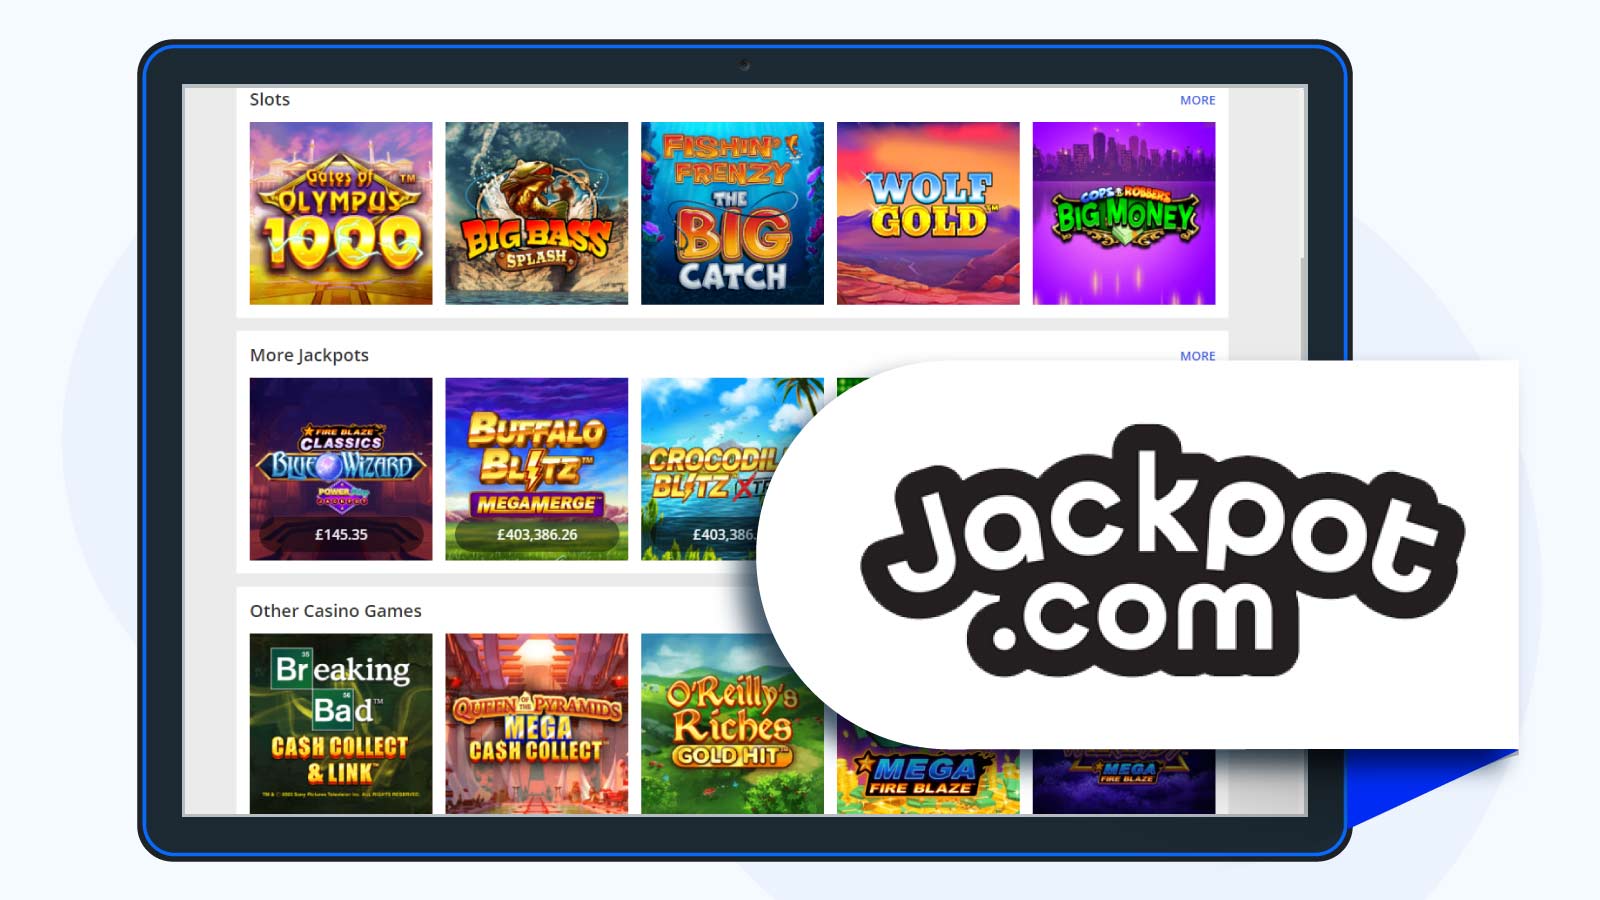 Jackpot.com Casino – Top Option For Budget Players